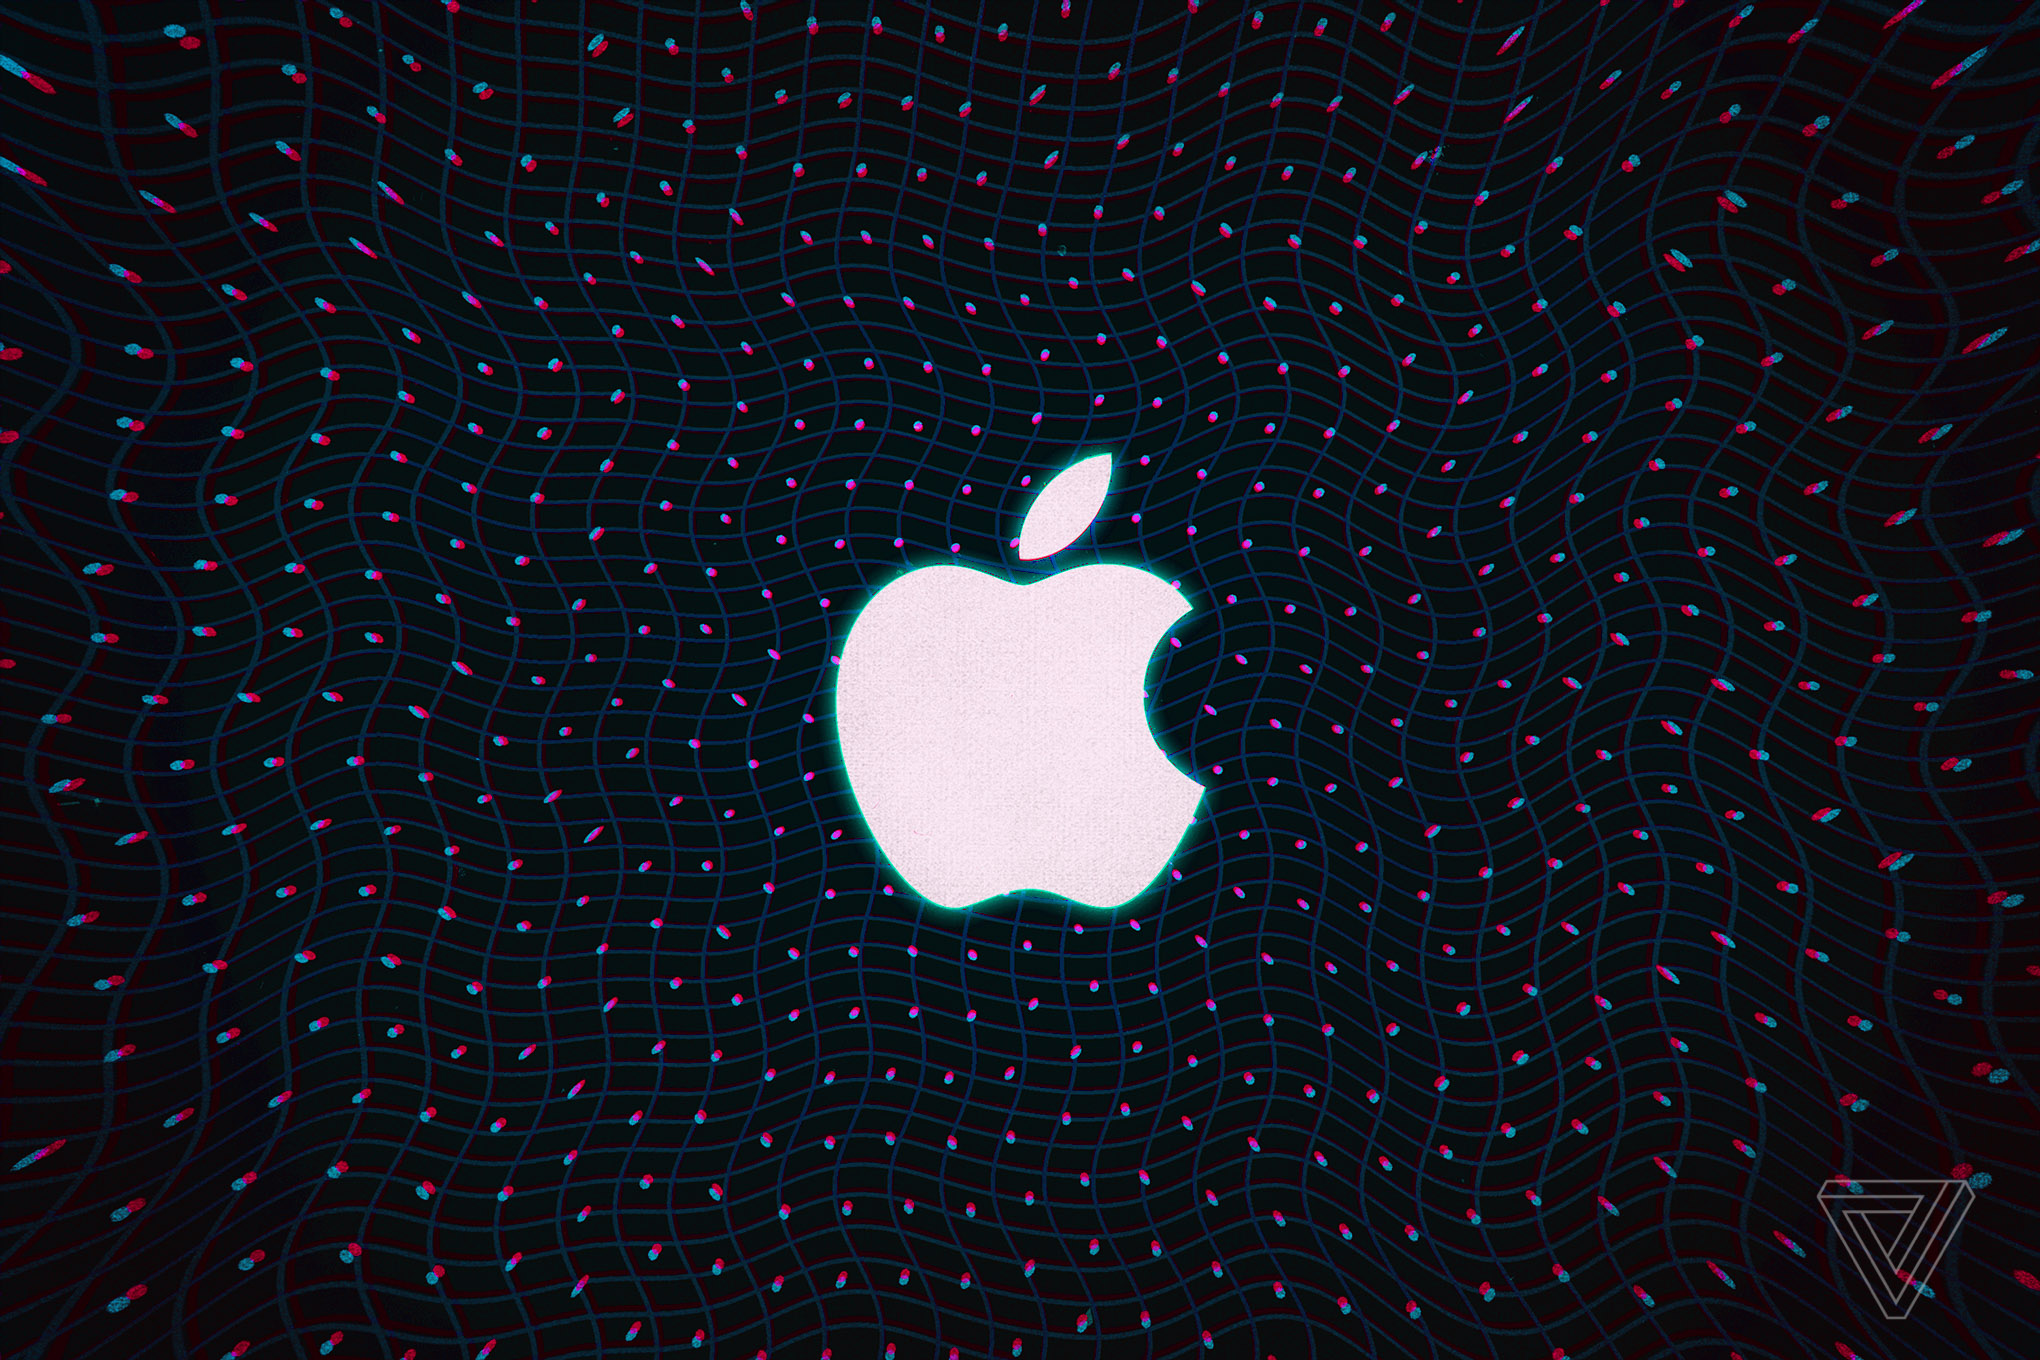 Apple tiếp tục tung cập nhật beta macOS, iOS 11 chiếm 85% người dùng